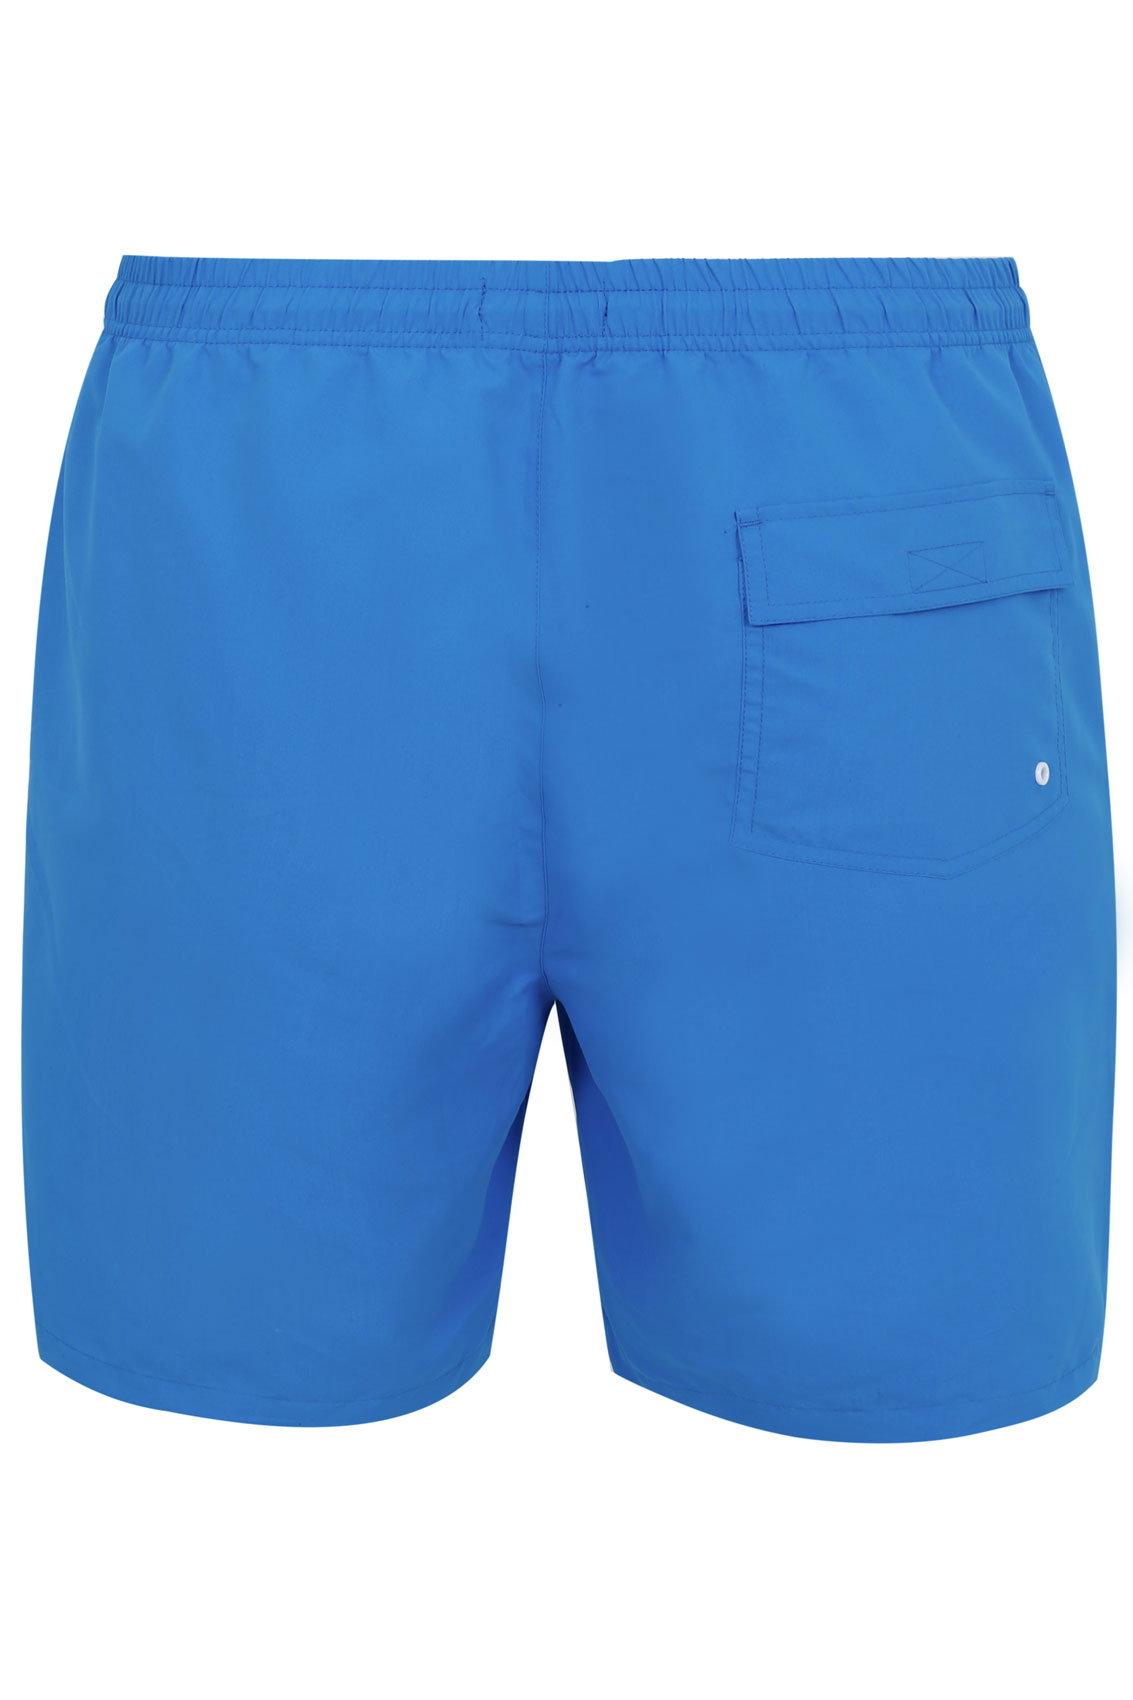 BadRhino Blue Swim Shorts